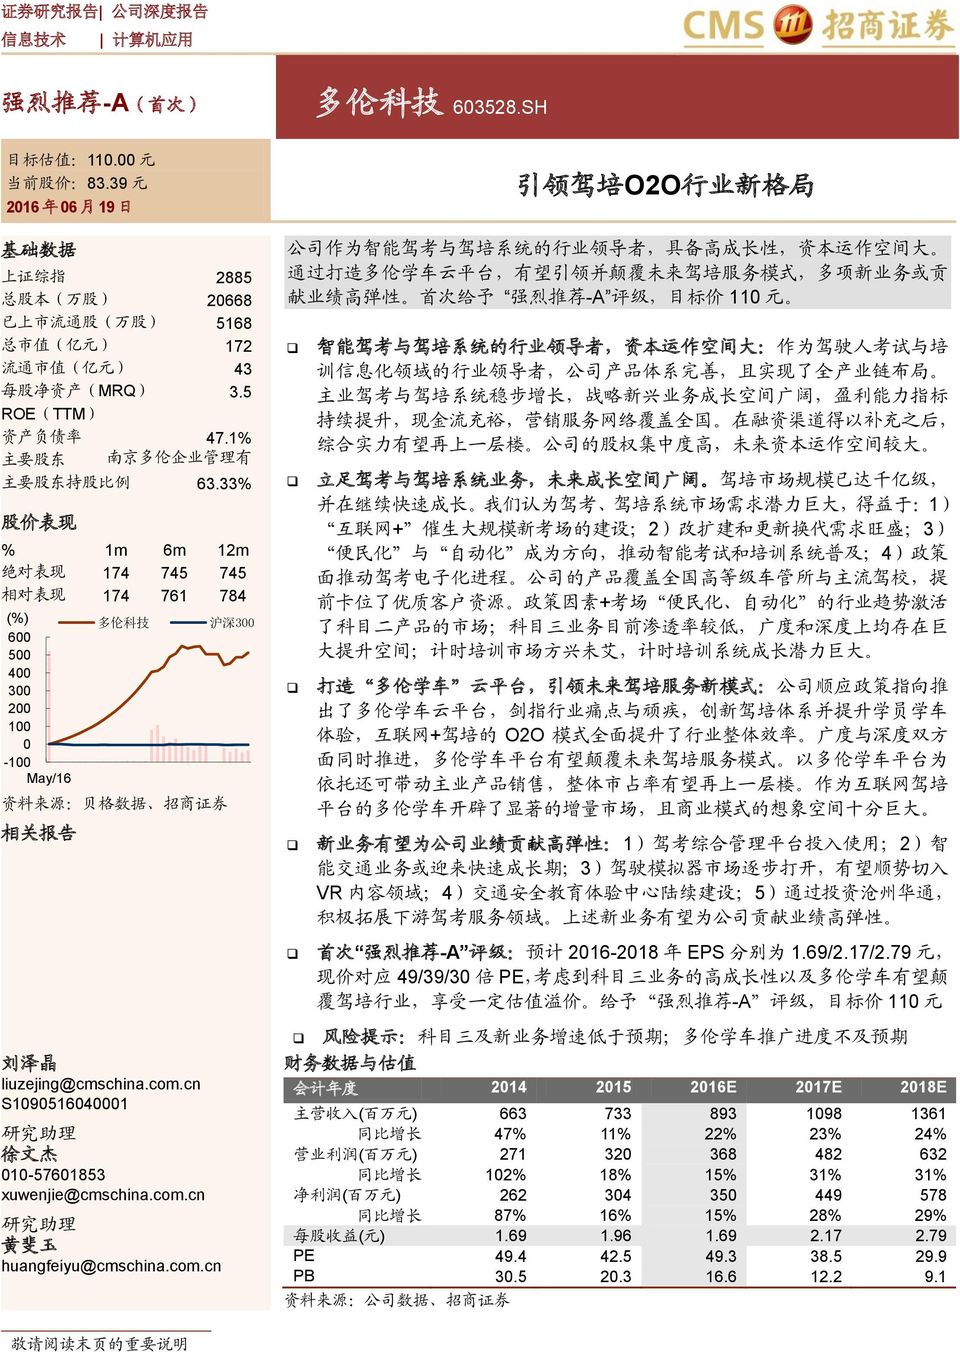 1% 主 要 股 东 南 京 多 伦 企 业 管 理 有 主 要 股 东 持 股 比 例 63.